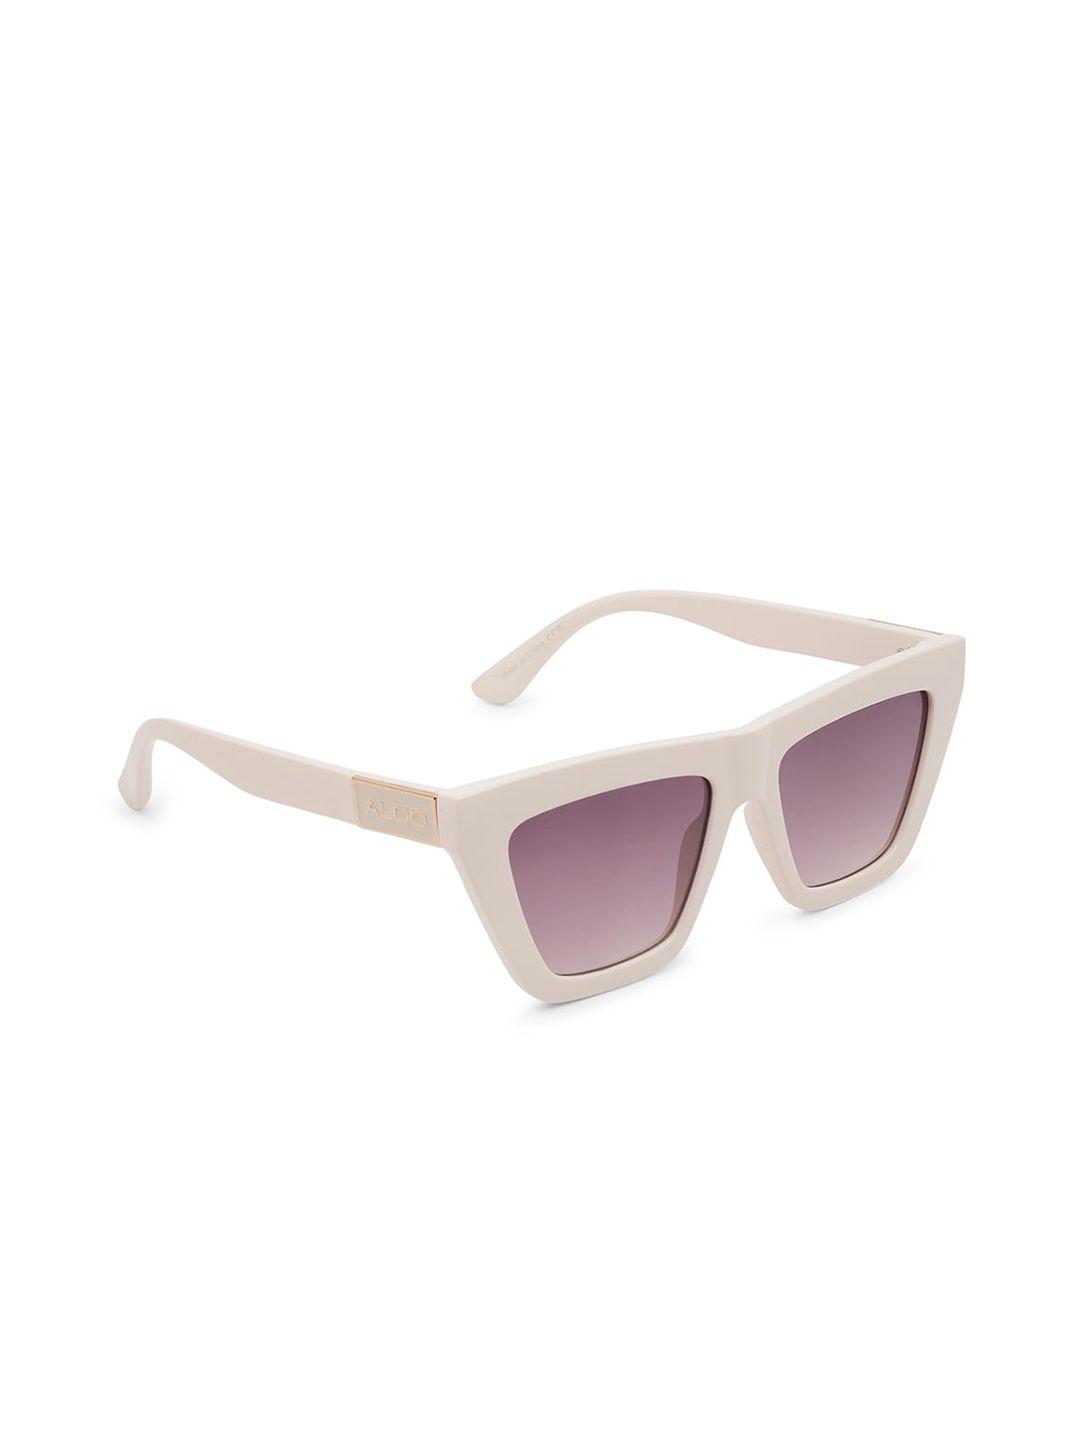 aldo women square sunglasses galaleveth102